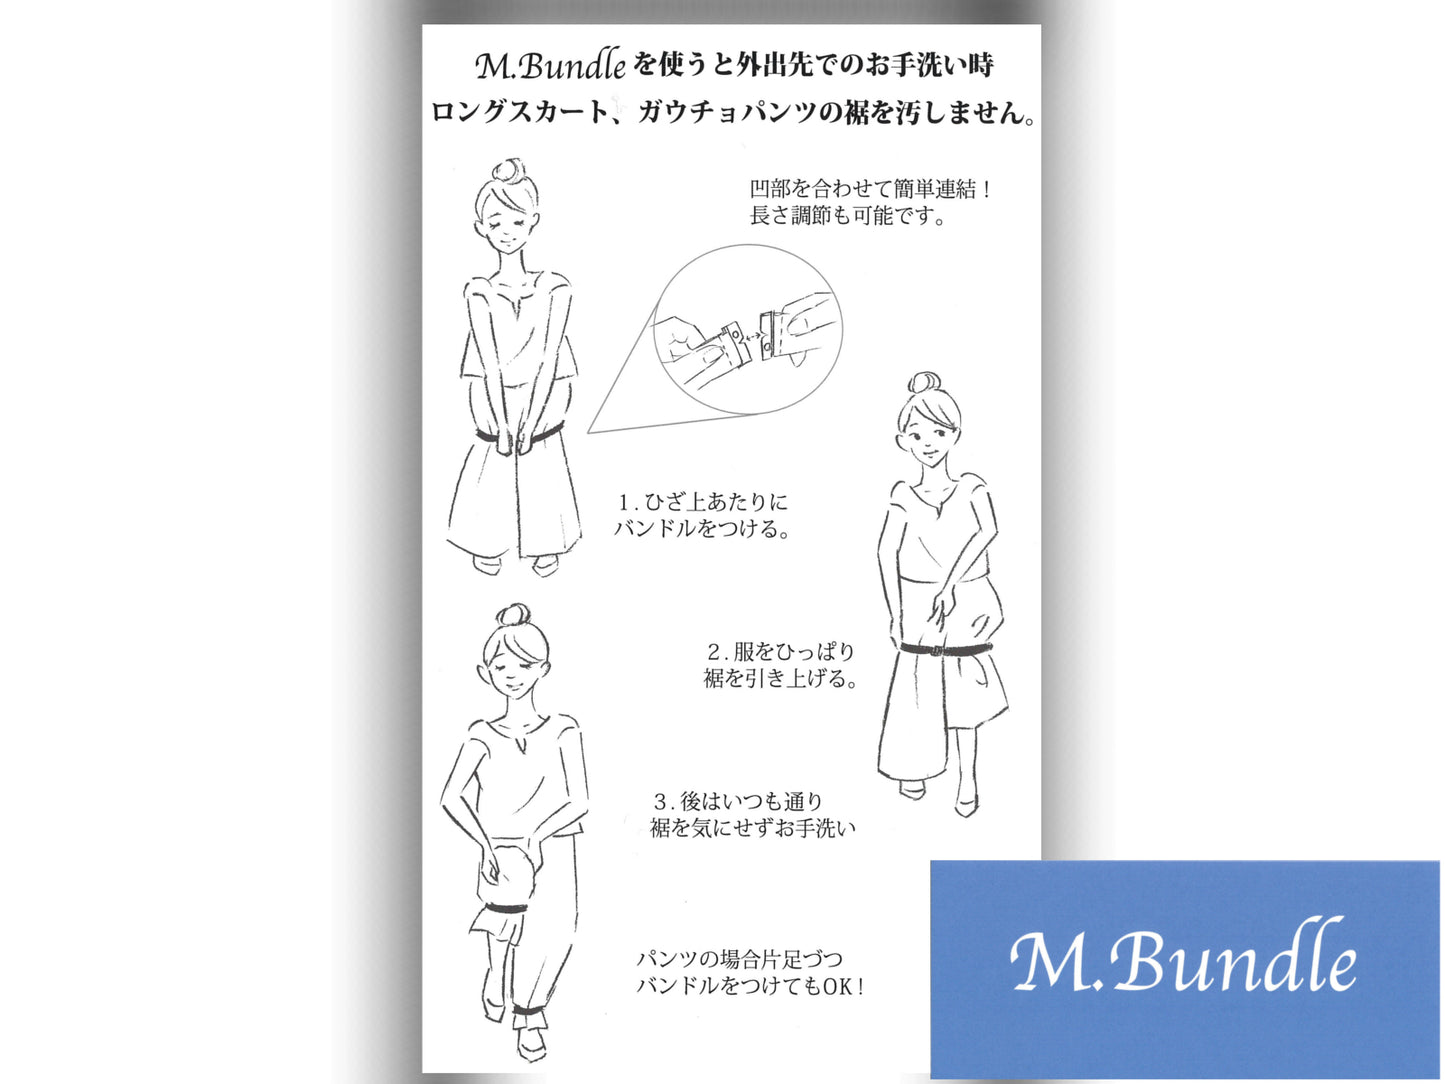 M.Bundle - ガウチョパンツなど丈が長いパンツ着用時、トイレで裾が汚れるのを防止するバンド〜【送料無料】